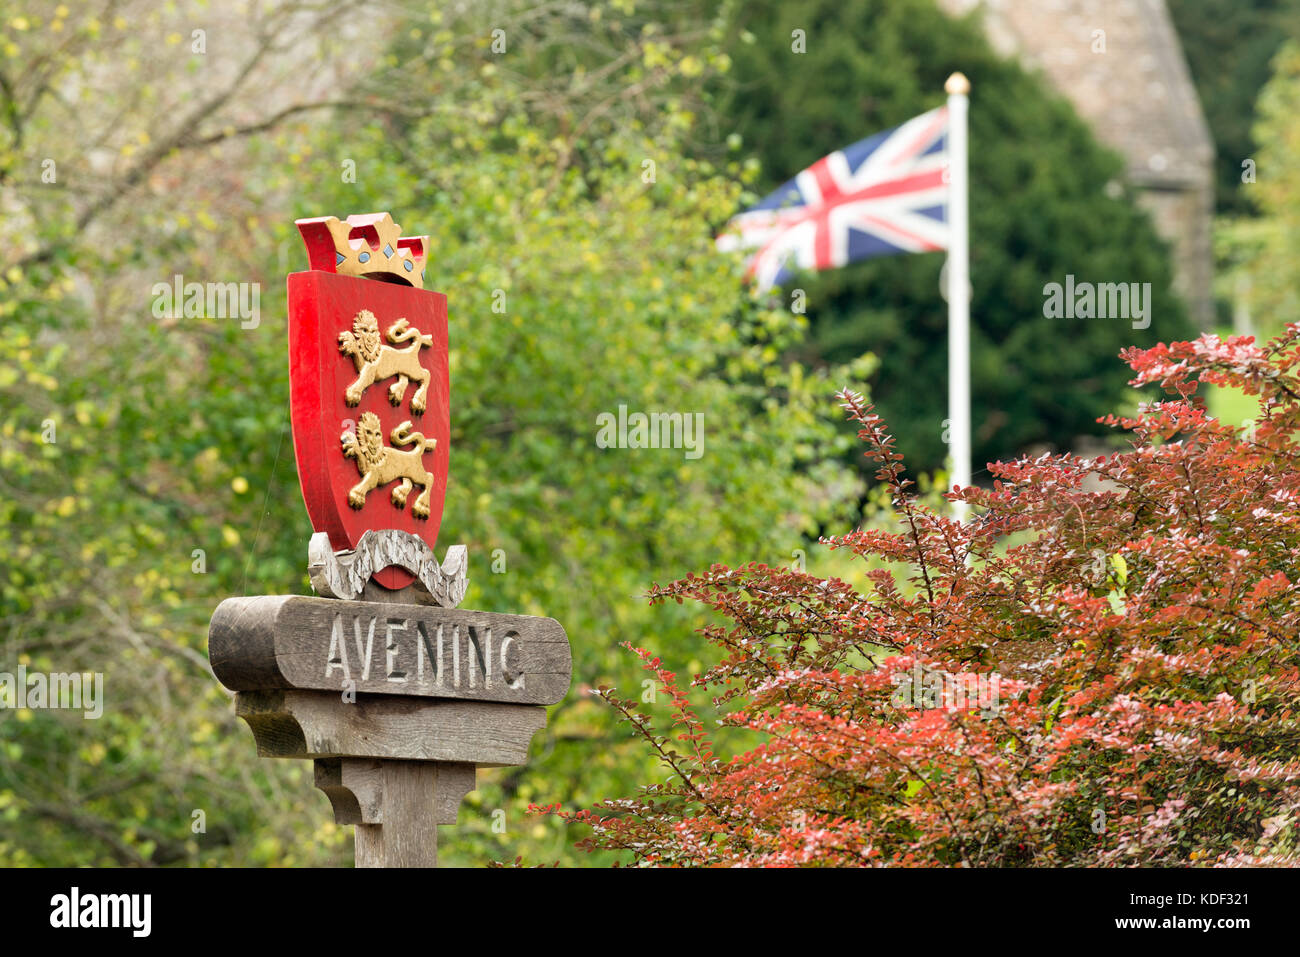 Il segno nel centro dello storico villaggio Costwold di avening, glocestershire, UK. Tra alberi autunnali con una bandiera europea svolazzanti dietro. Foto Stock